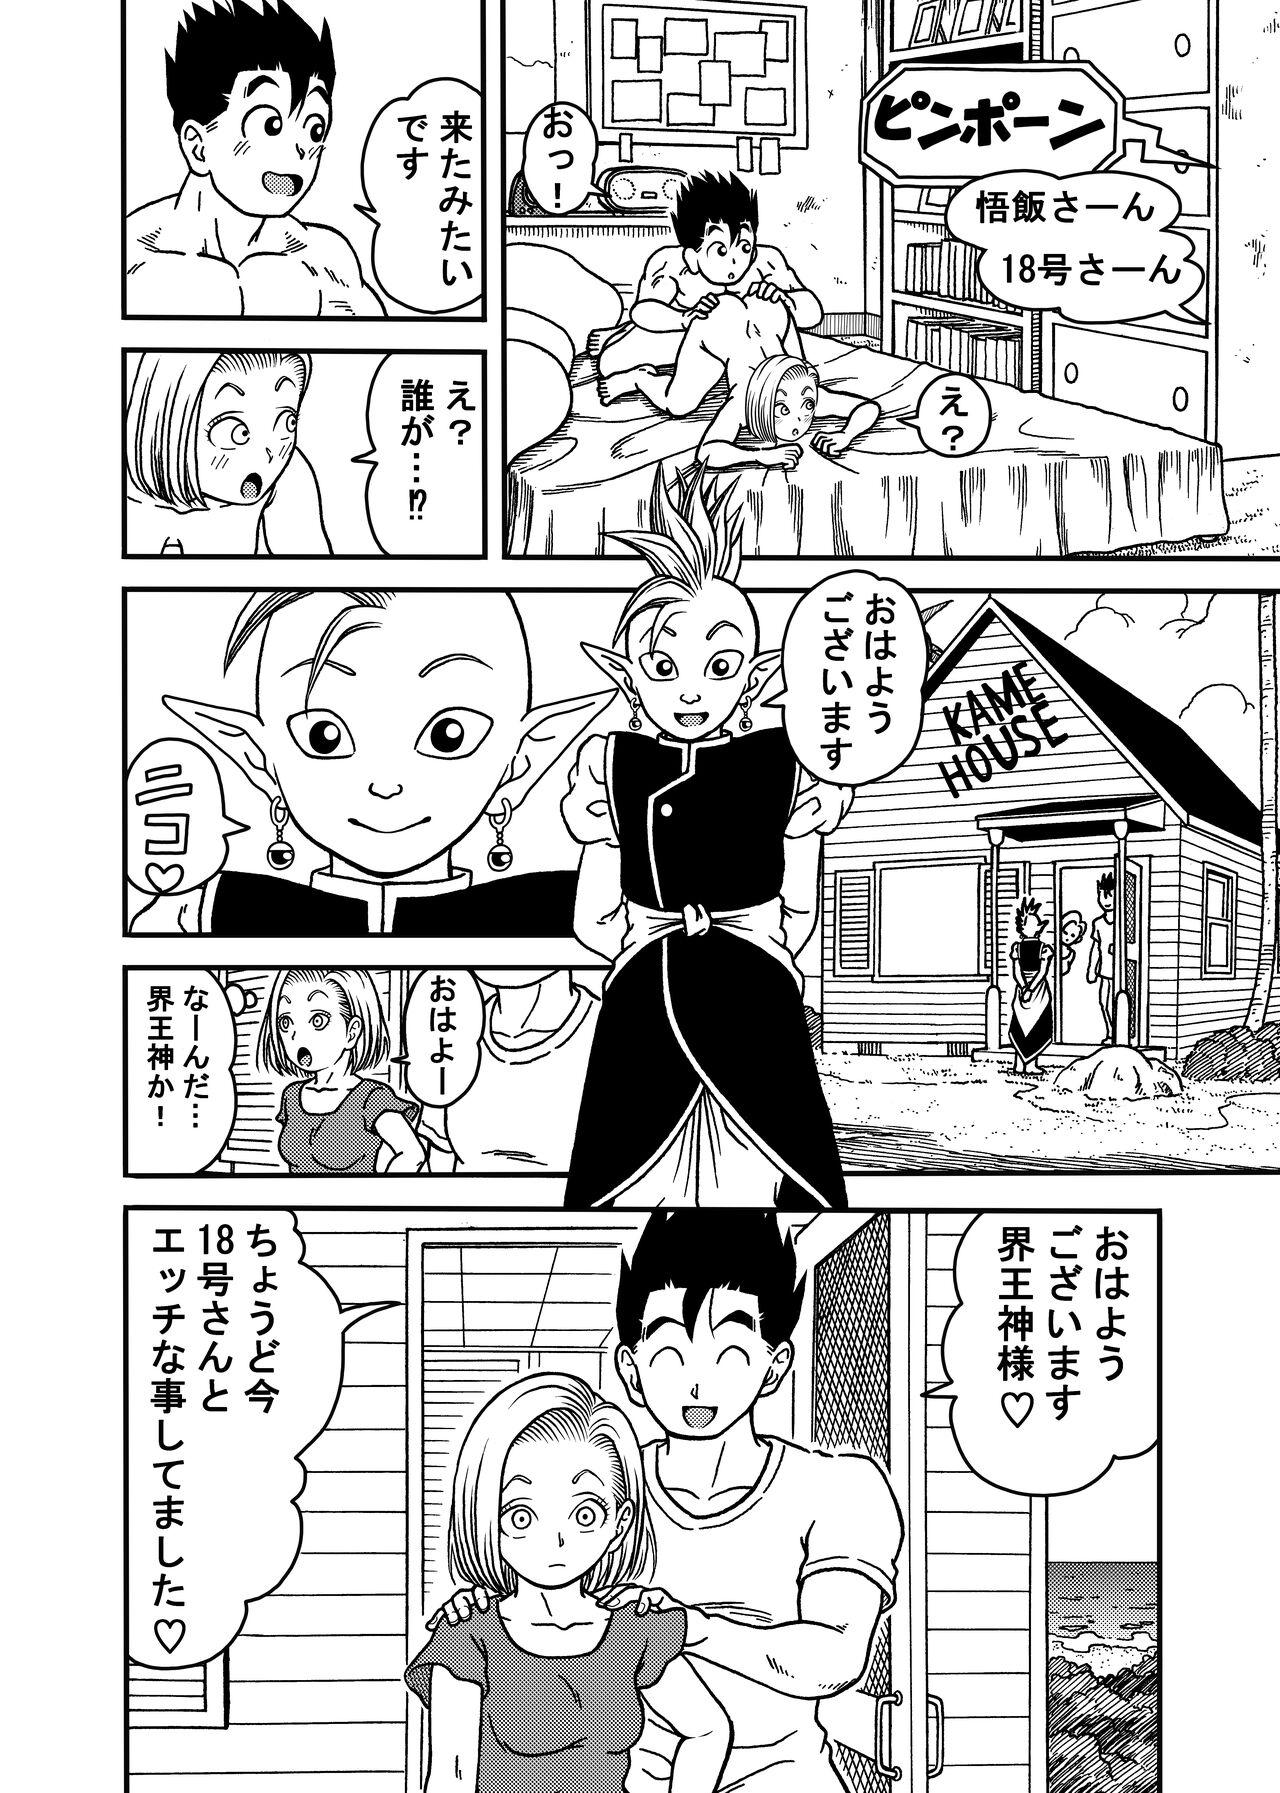 Chunky 18-gou NTR Nakadashi on Parade 5 - Dragon ball z Gay Medic - Page 8